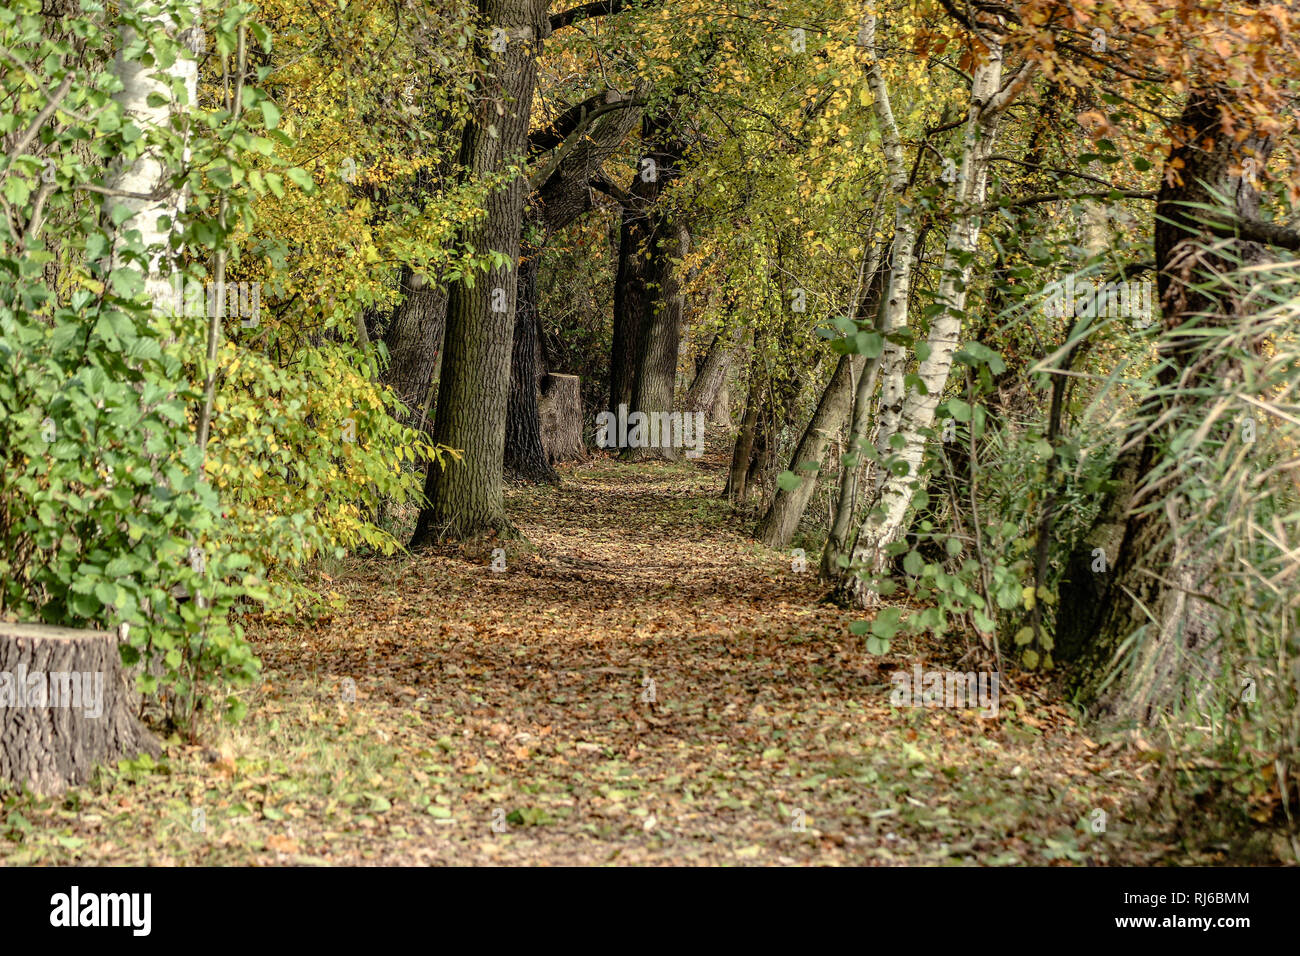 Herbst, Wald, Weg, Bäume Stock Photo